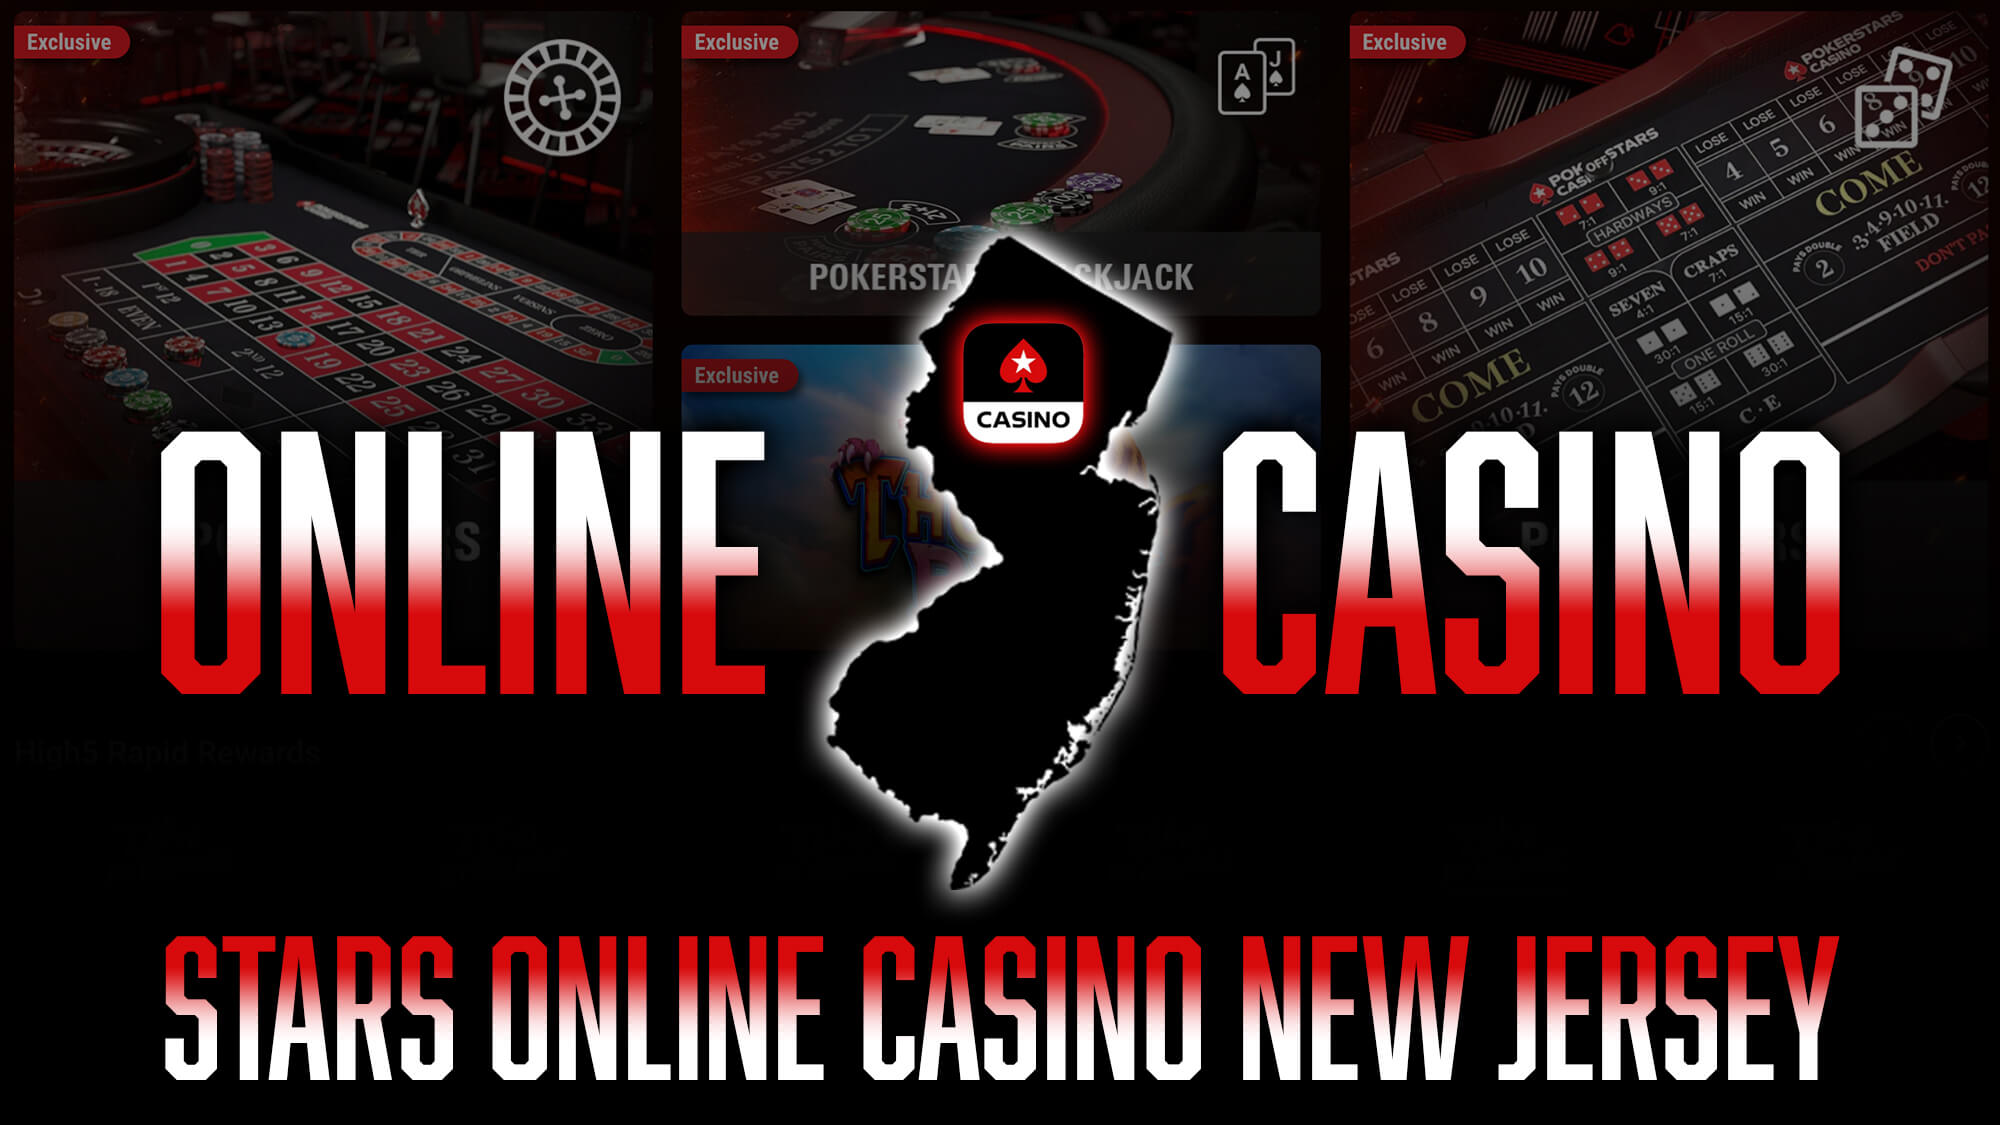 Stars Casino New Jersey: Claim $100 Bonus Code